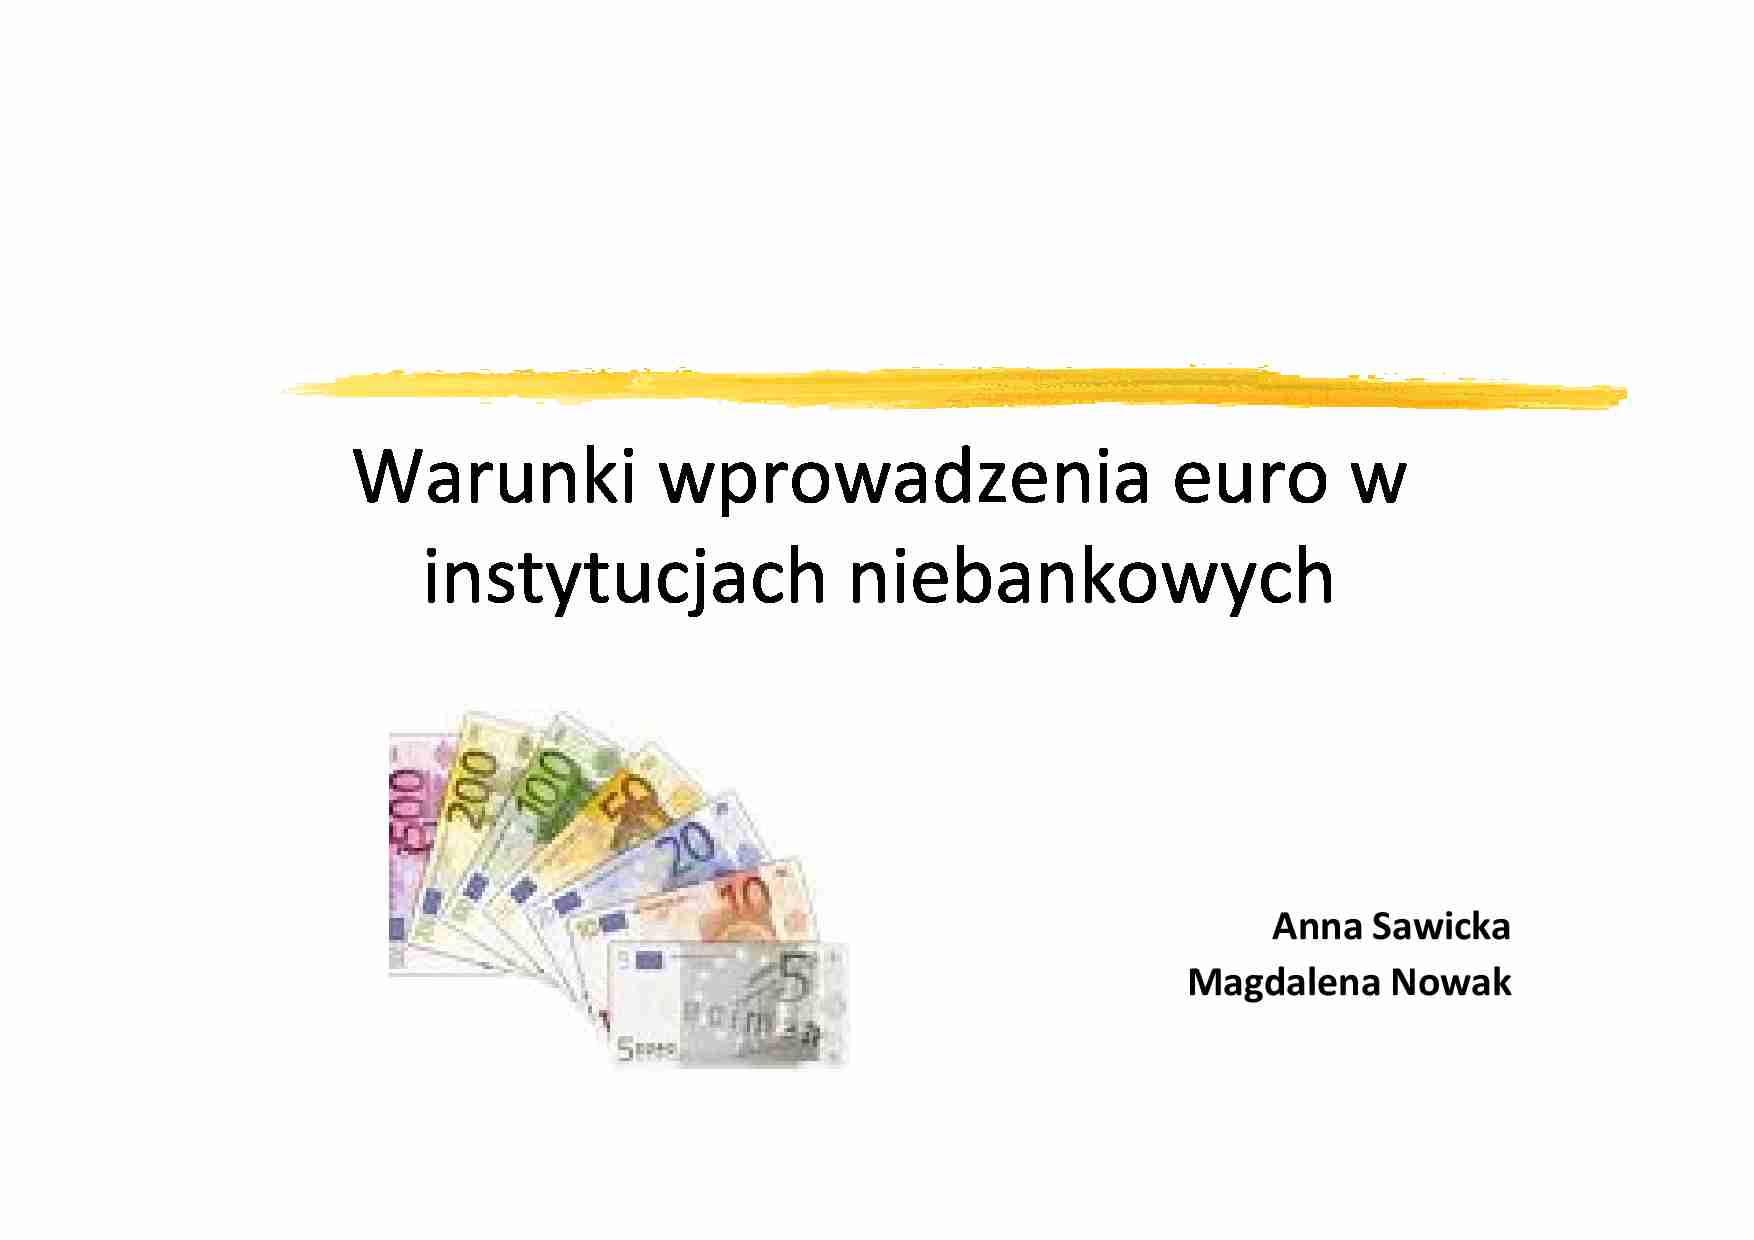 Warunki wprowadzania euro w instytucjach niebankowych - wykład z korporacji finansowych - strona 1